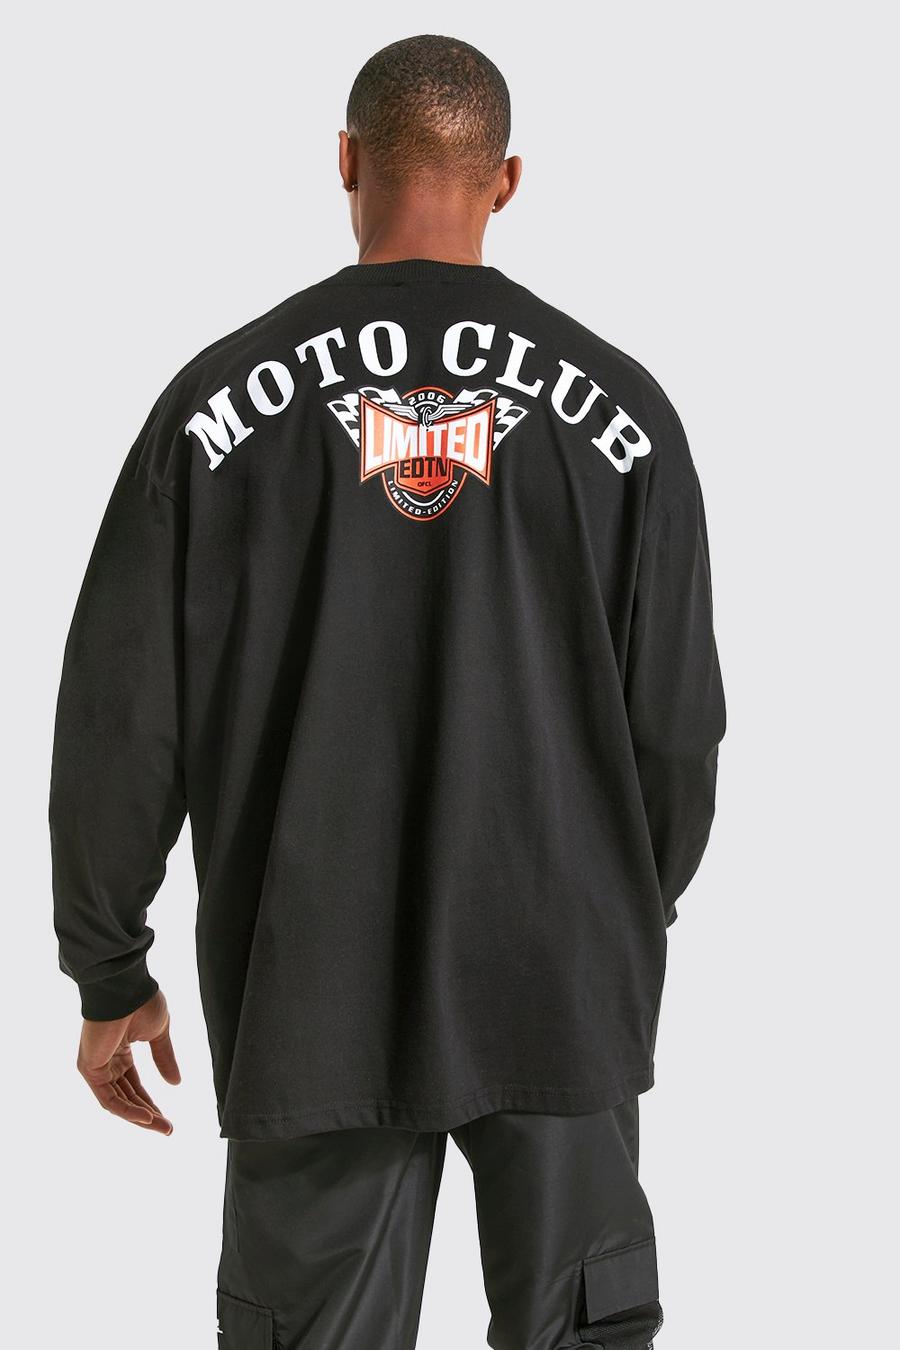 שחור negro טישרט אוברסייז עם כיתוב Moto Club ושרוולים ארוכים